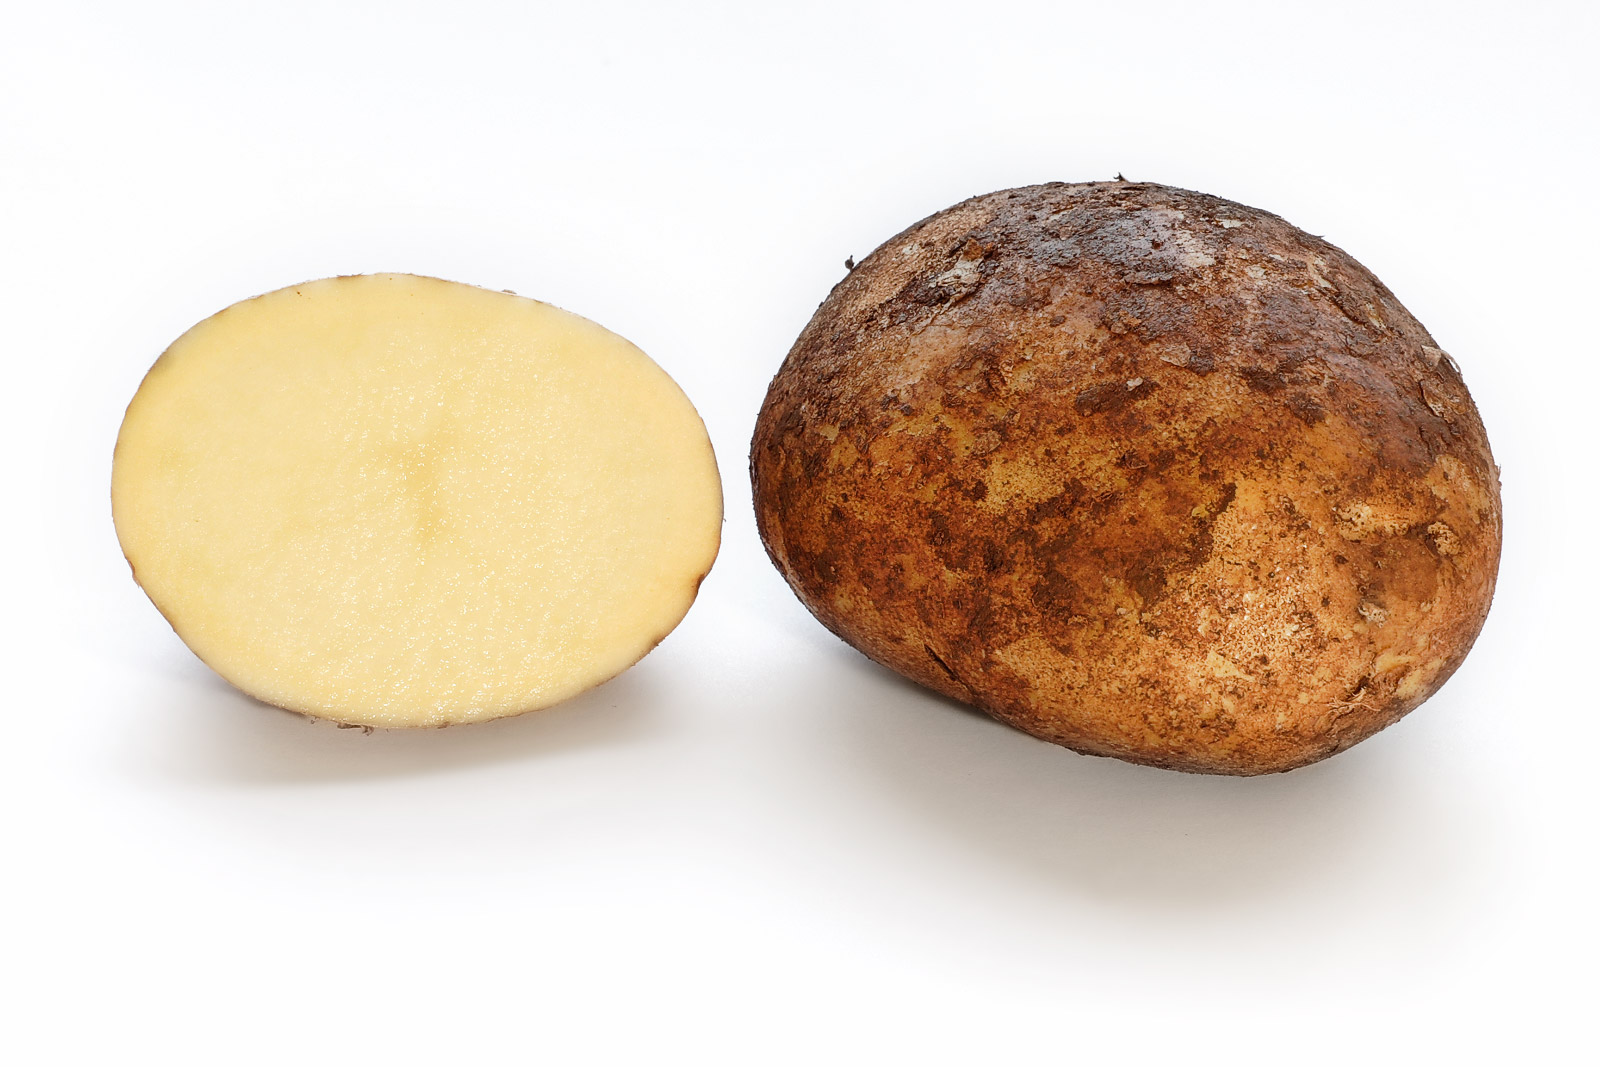 Sự kỳ thị và đánh đồng khoai tây với 'quả táo quỷ' trong quá khứ